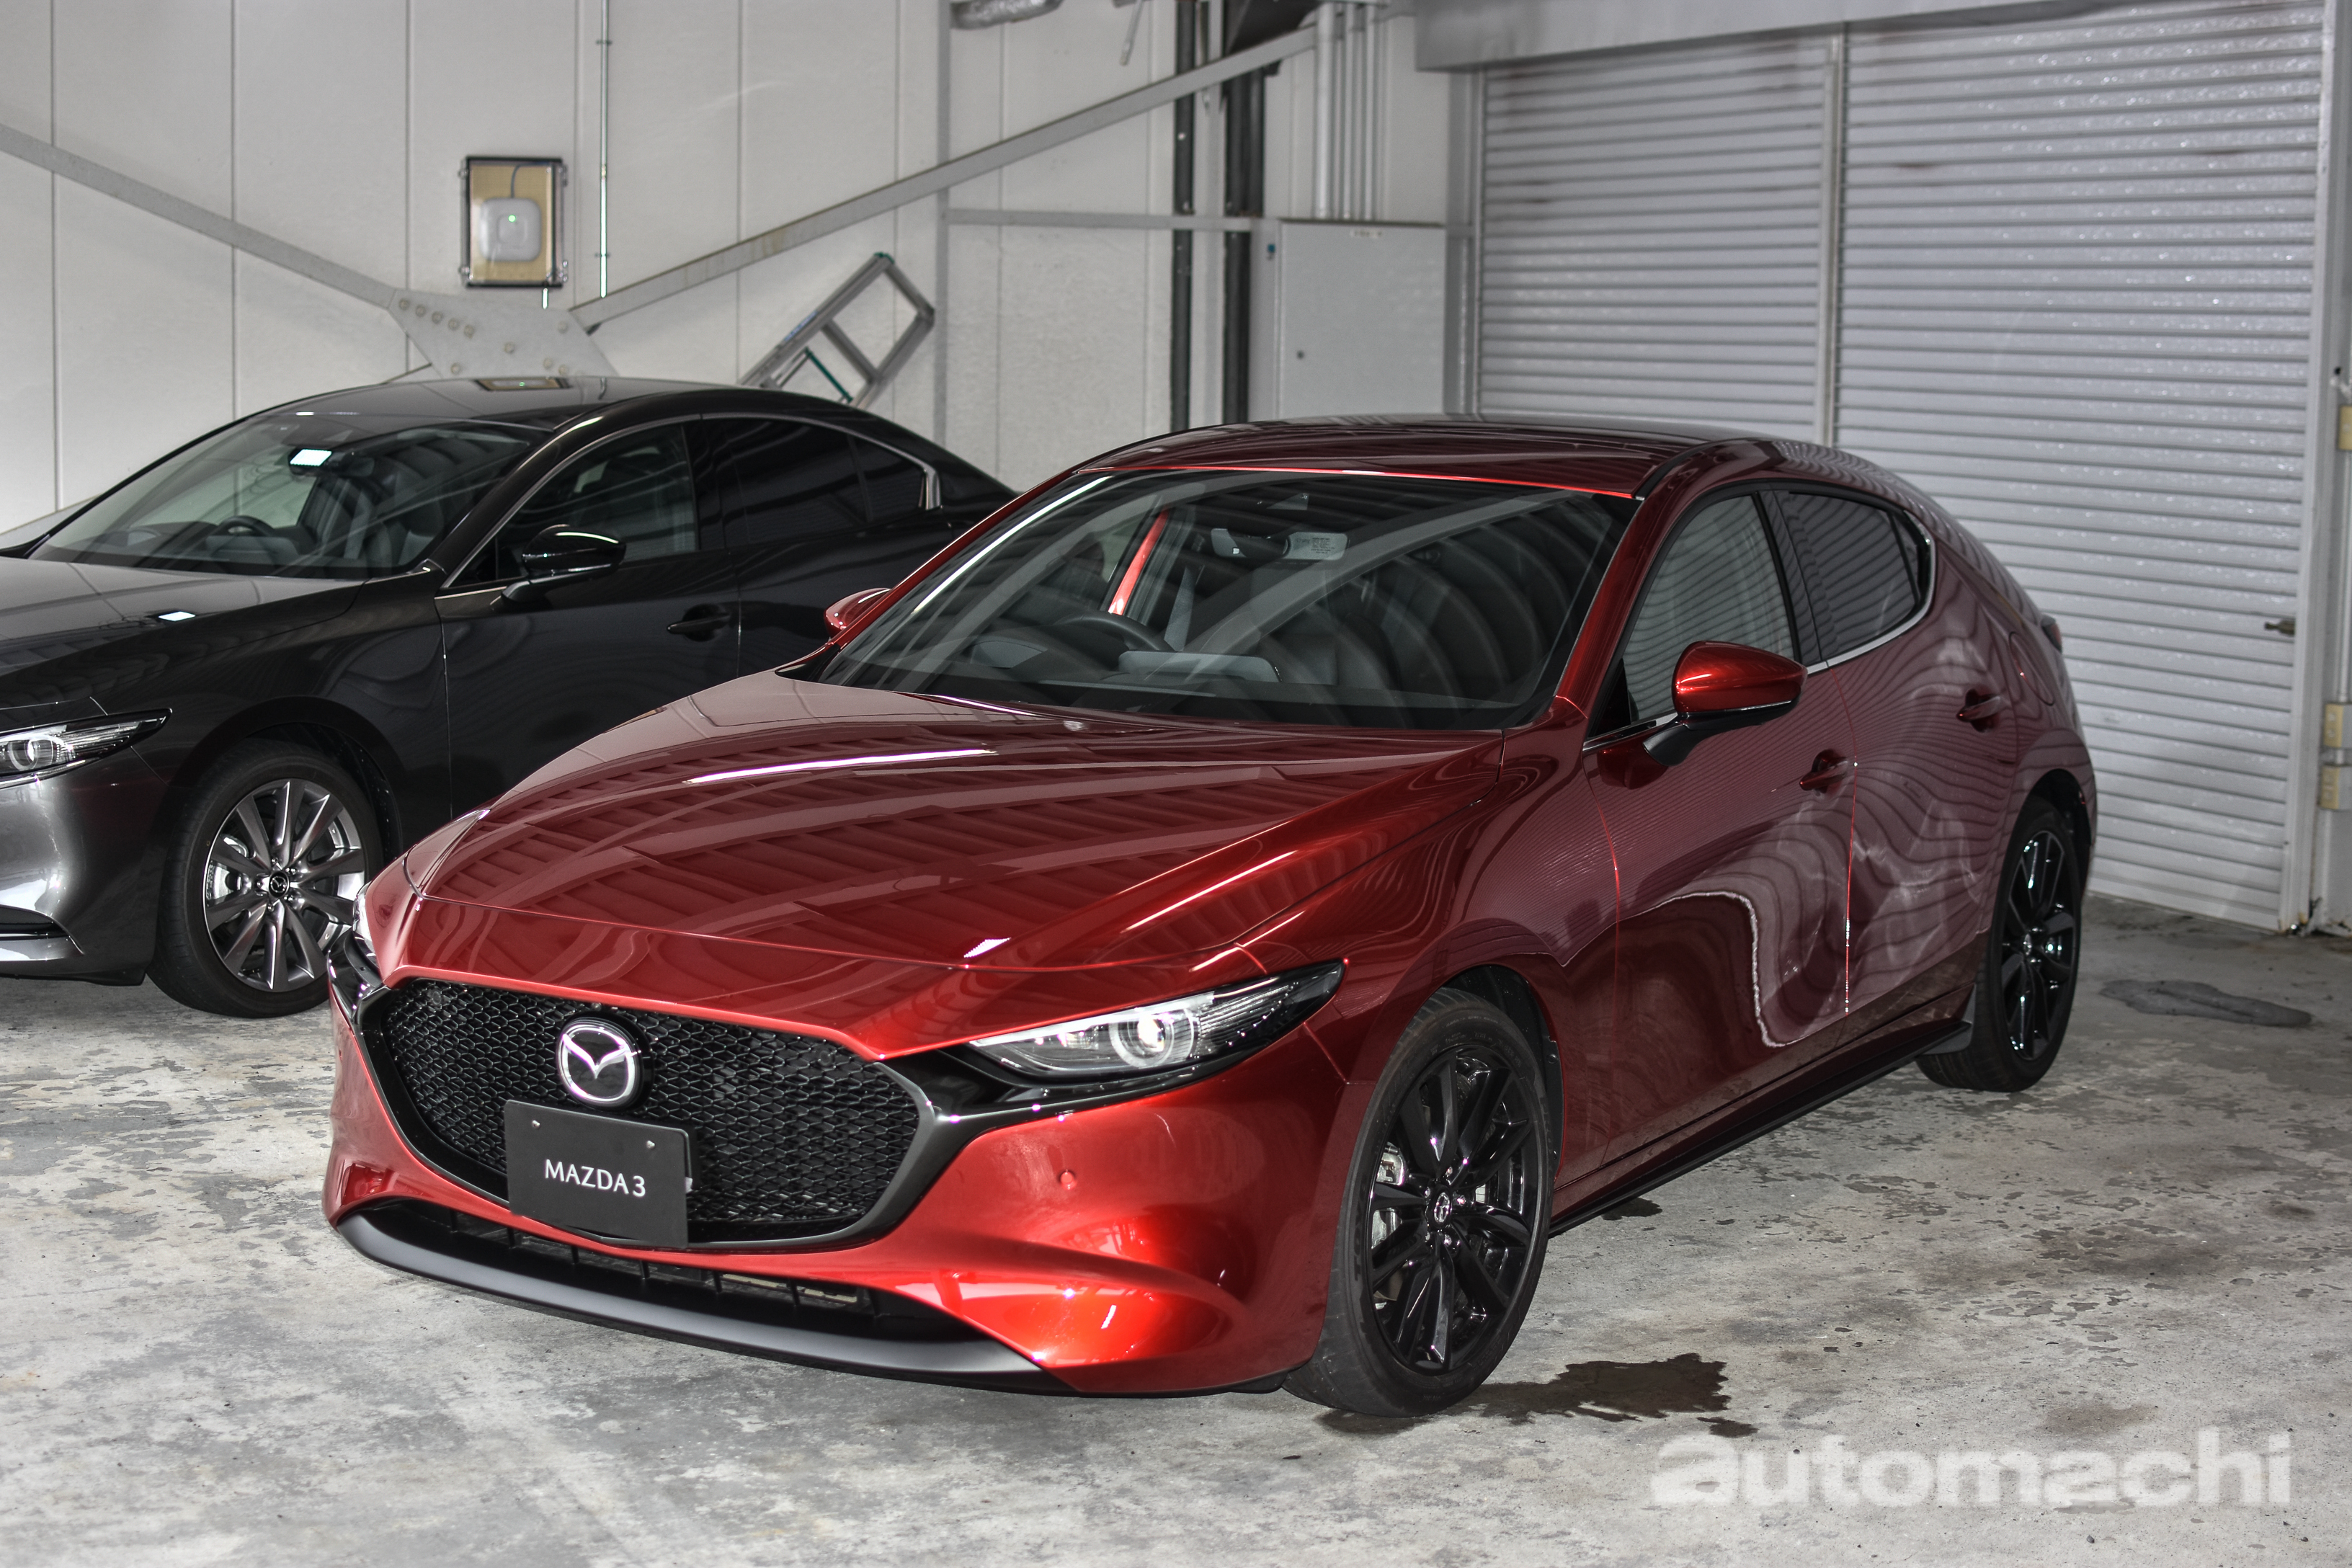 2019 Mazda3 抢先看，新车即将在我国市场上市！